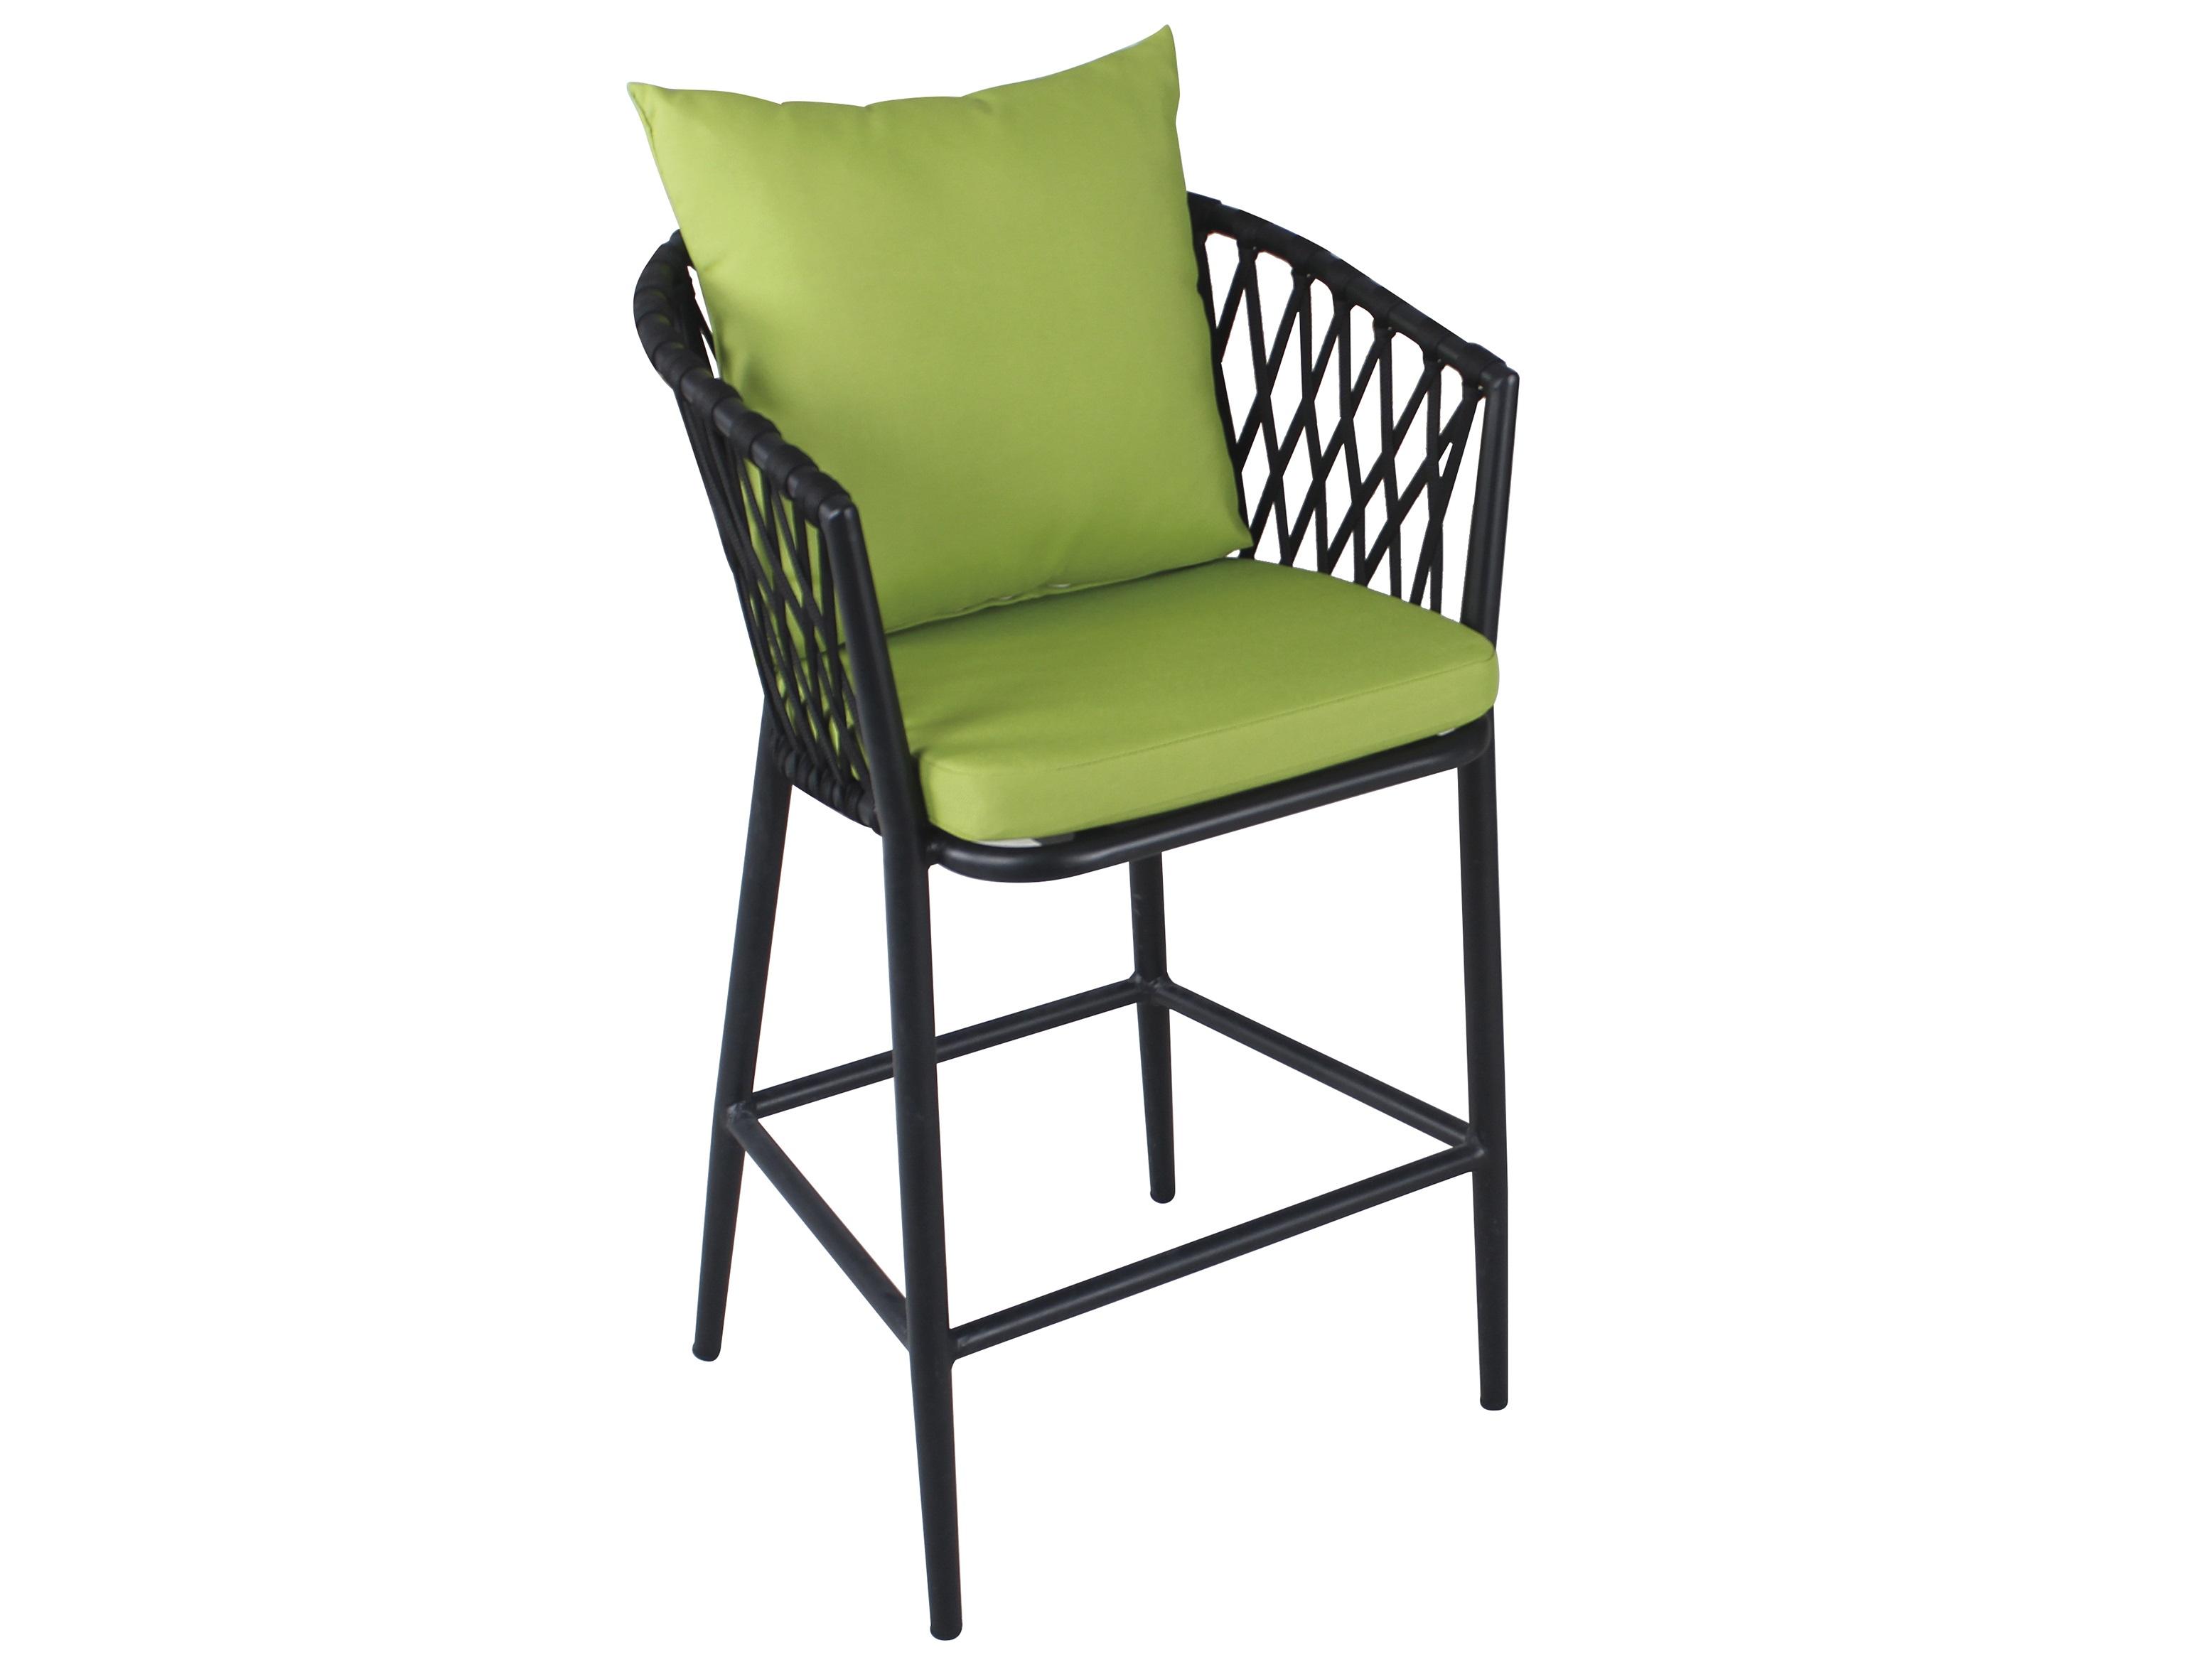 Black aluminum frame garden bar chair